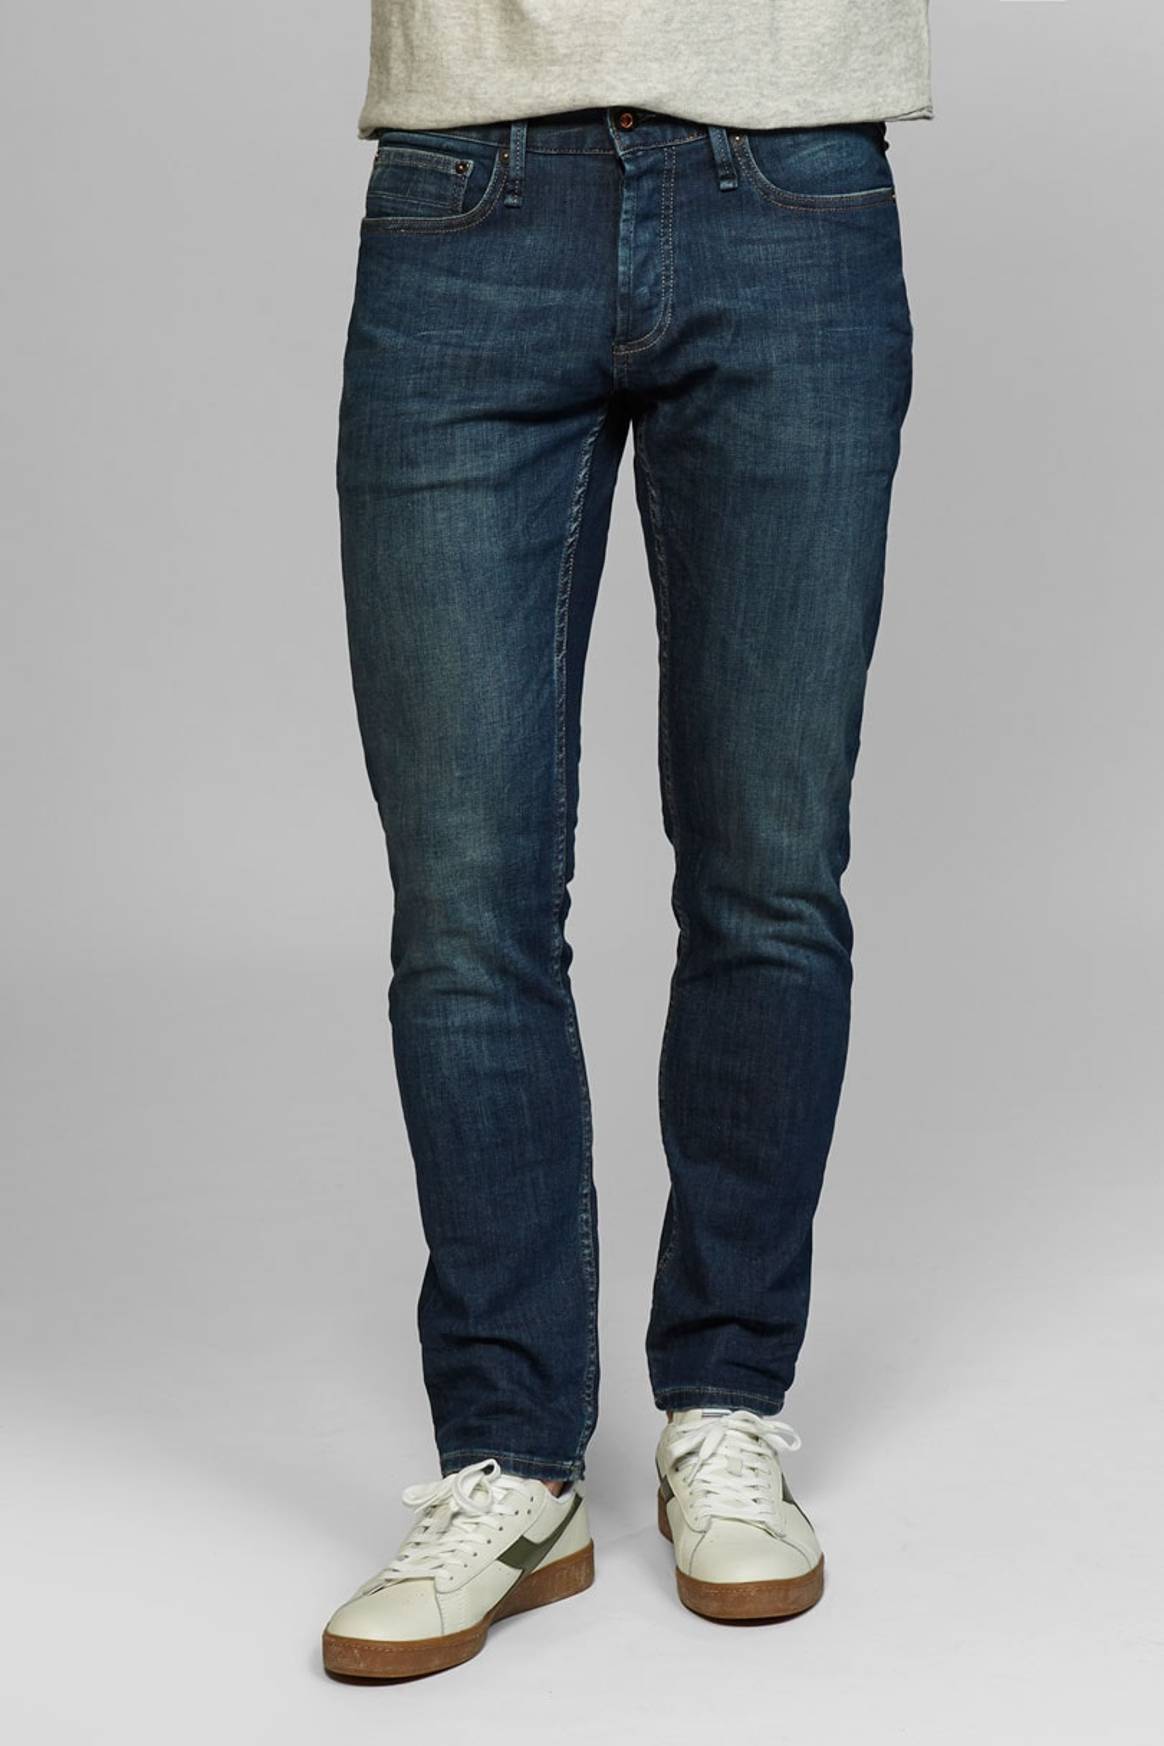 Mar En honor tienda Los jeans más vendidos de las 9 mejores marcas de denim